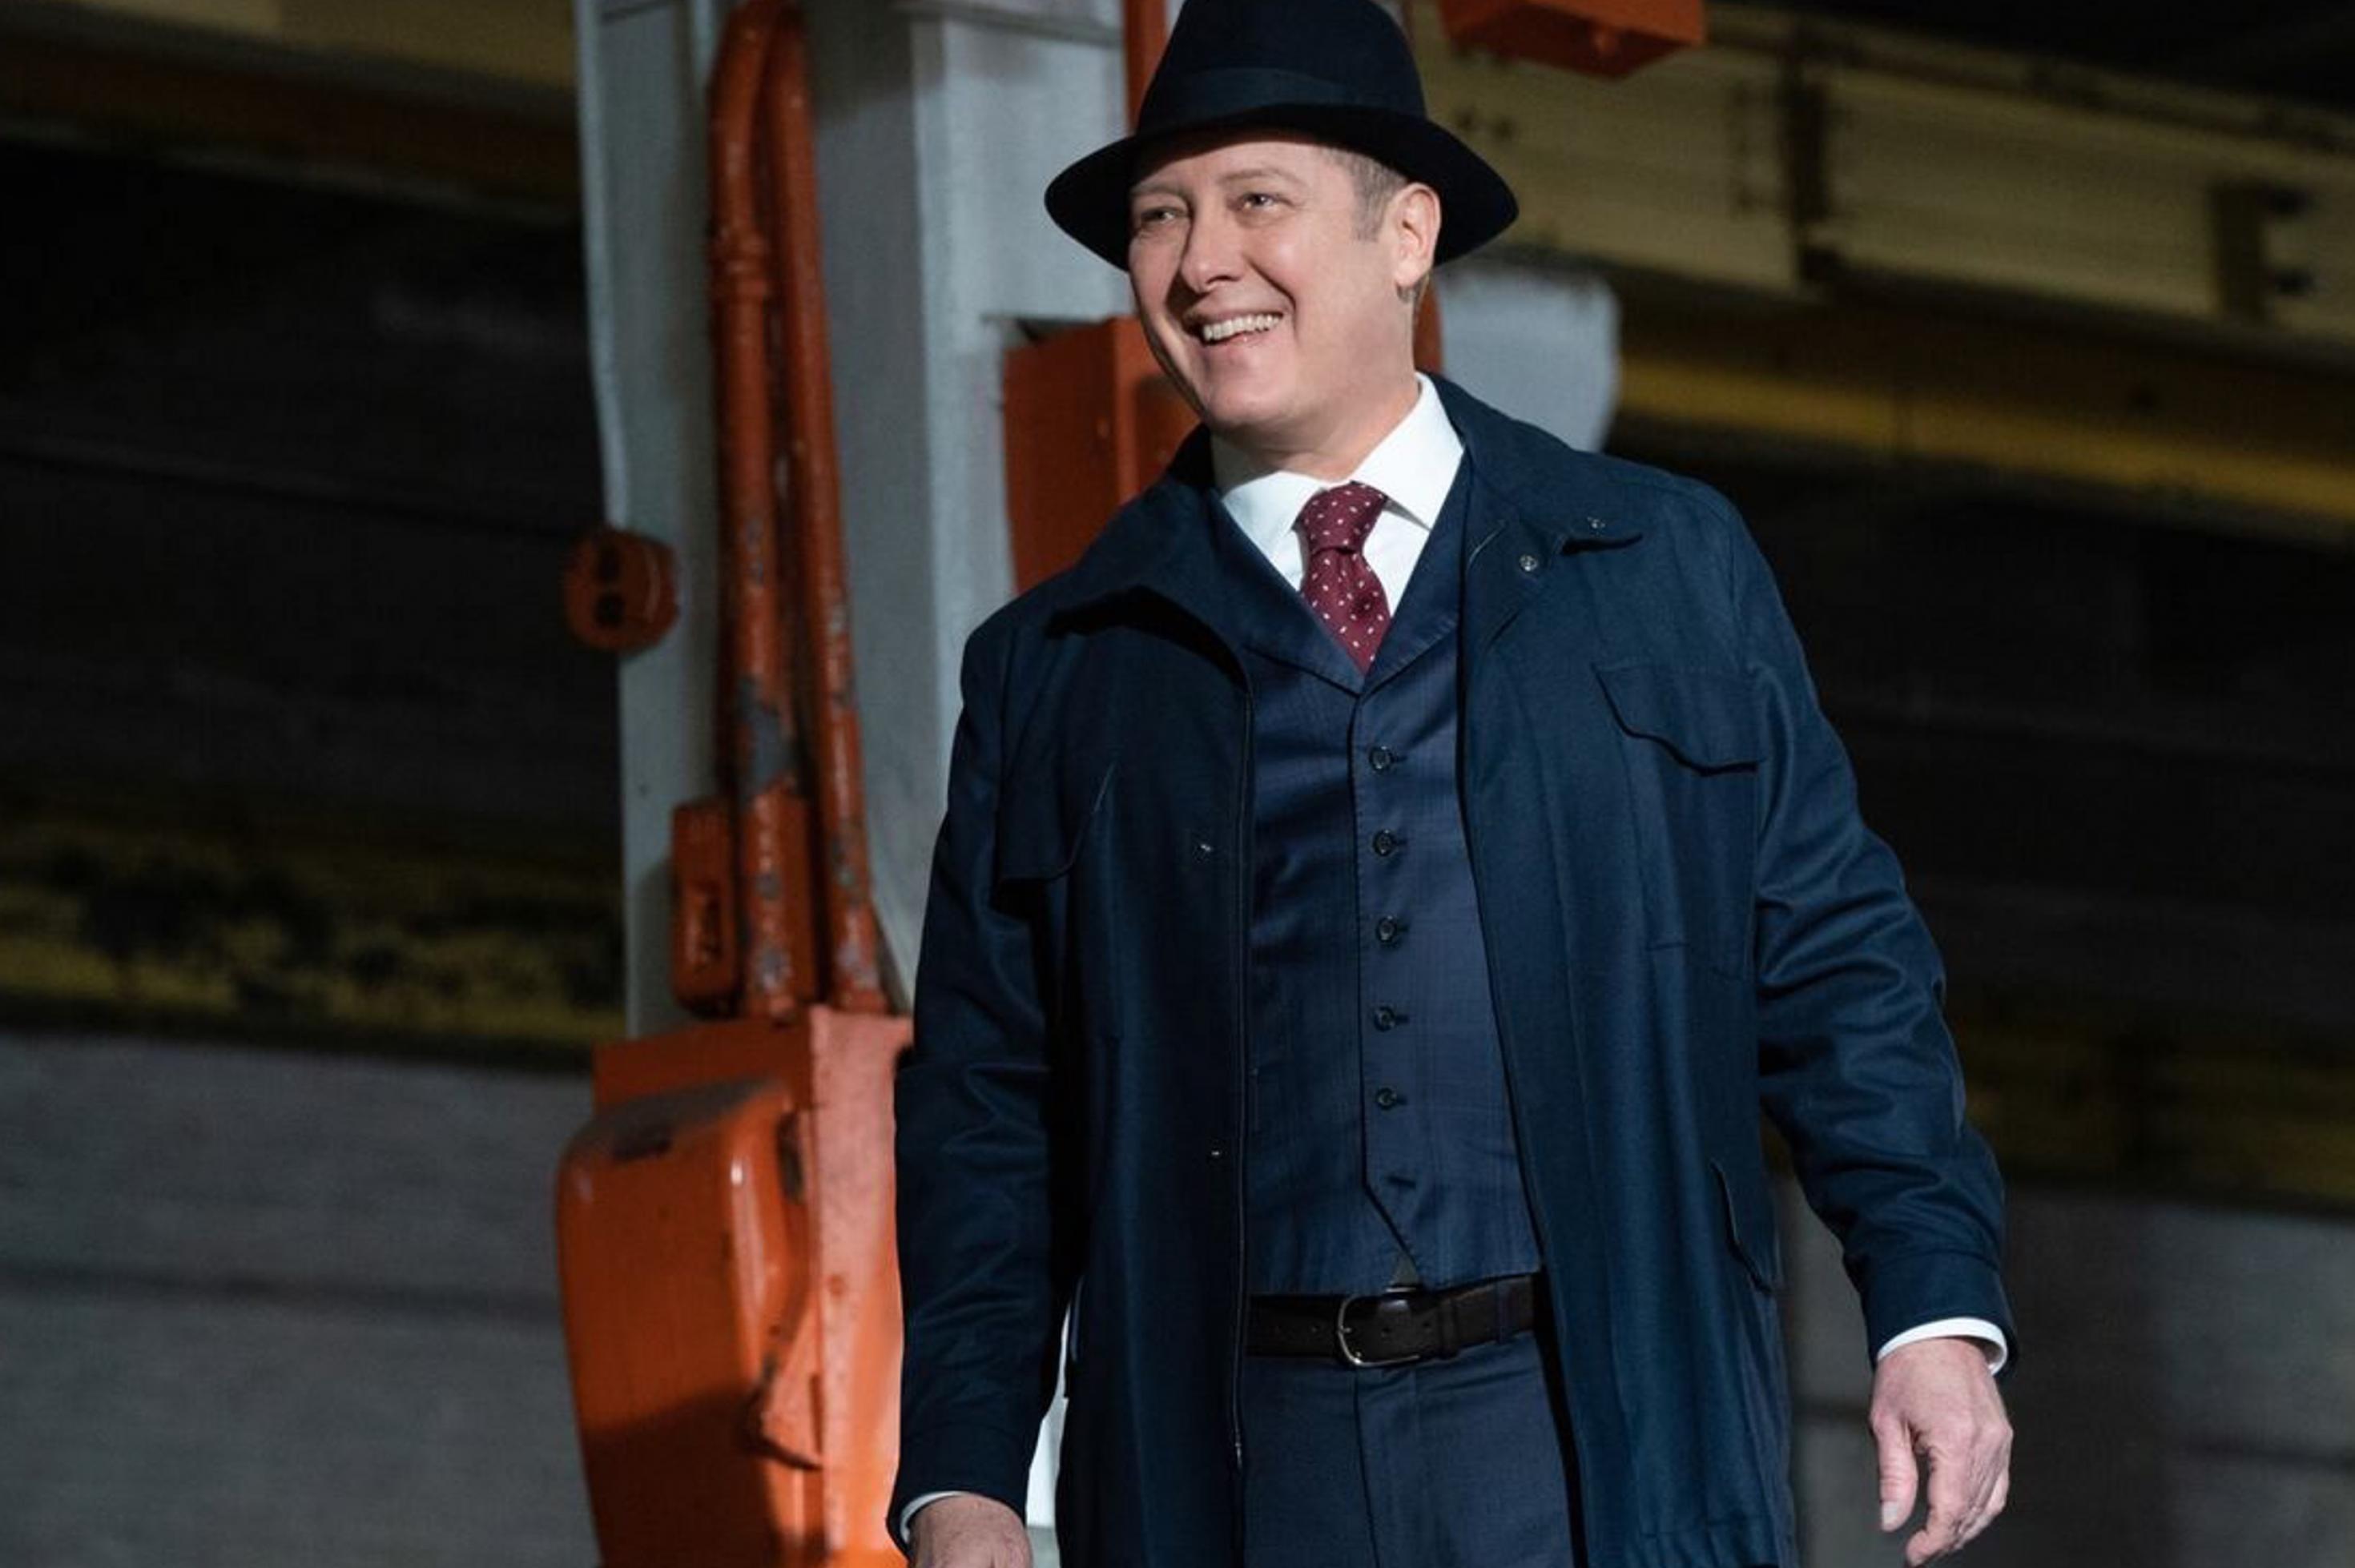 Reddington in einer Maschinenhalle, er grinst ziemlich arrogant